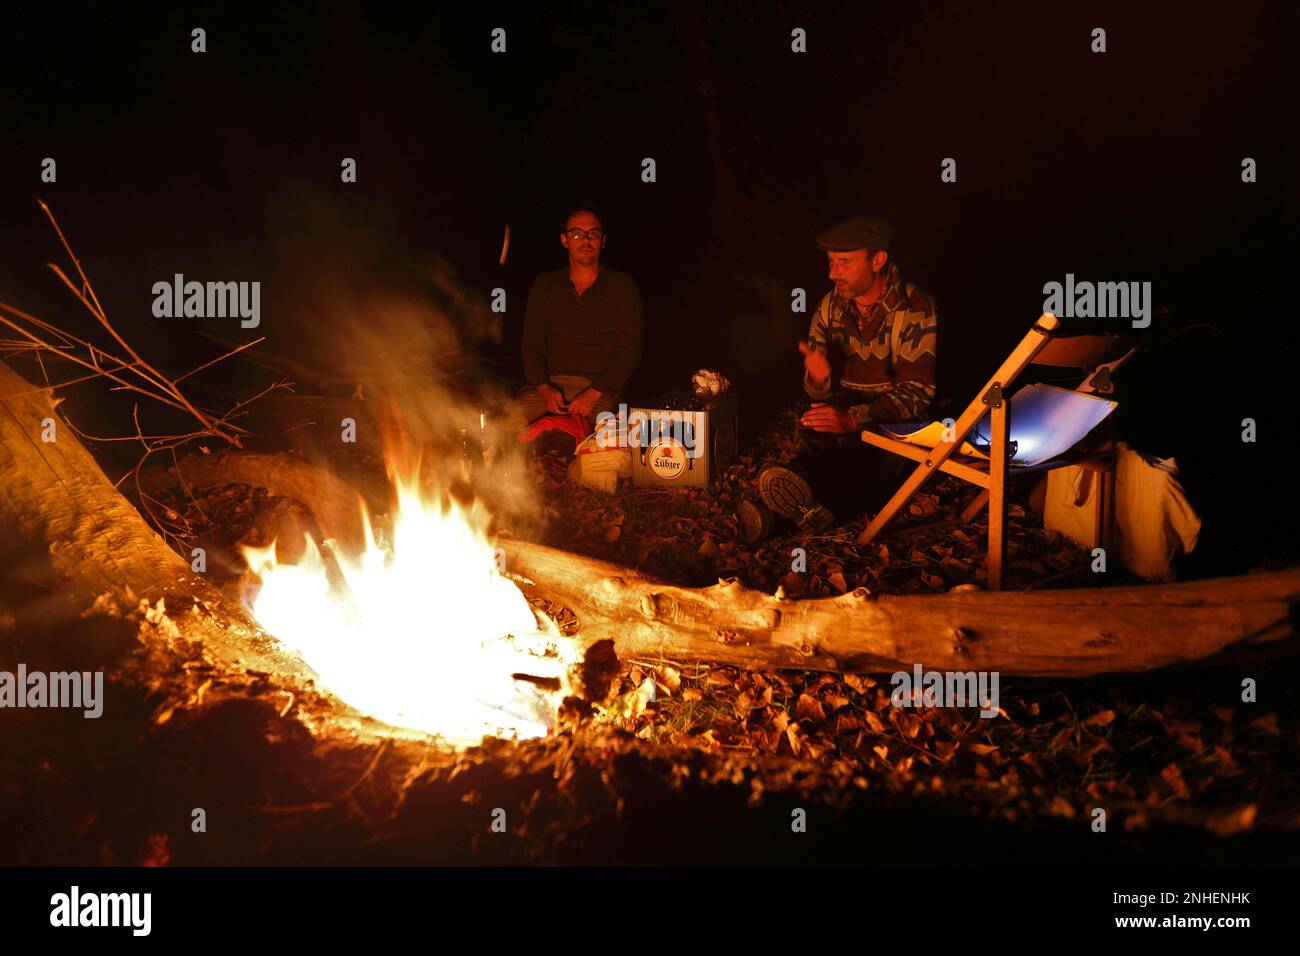 Am Abend im Lager am Feuer, zwei Männer am Lagerfeuer, Biosphärenreservat Mittelelbe, Dessau-Rosslau, Sachsen-Anhalt, Deutschland Stockfoto